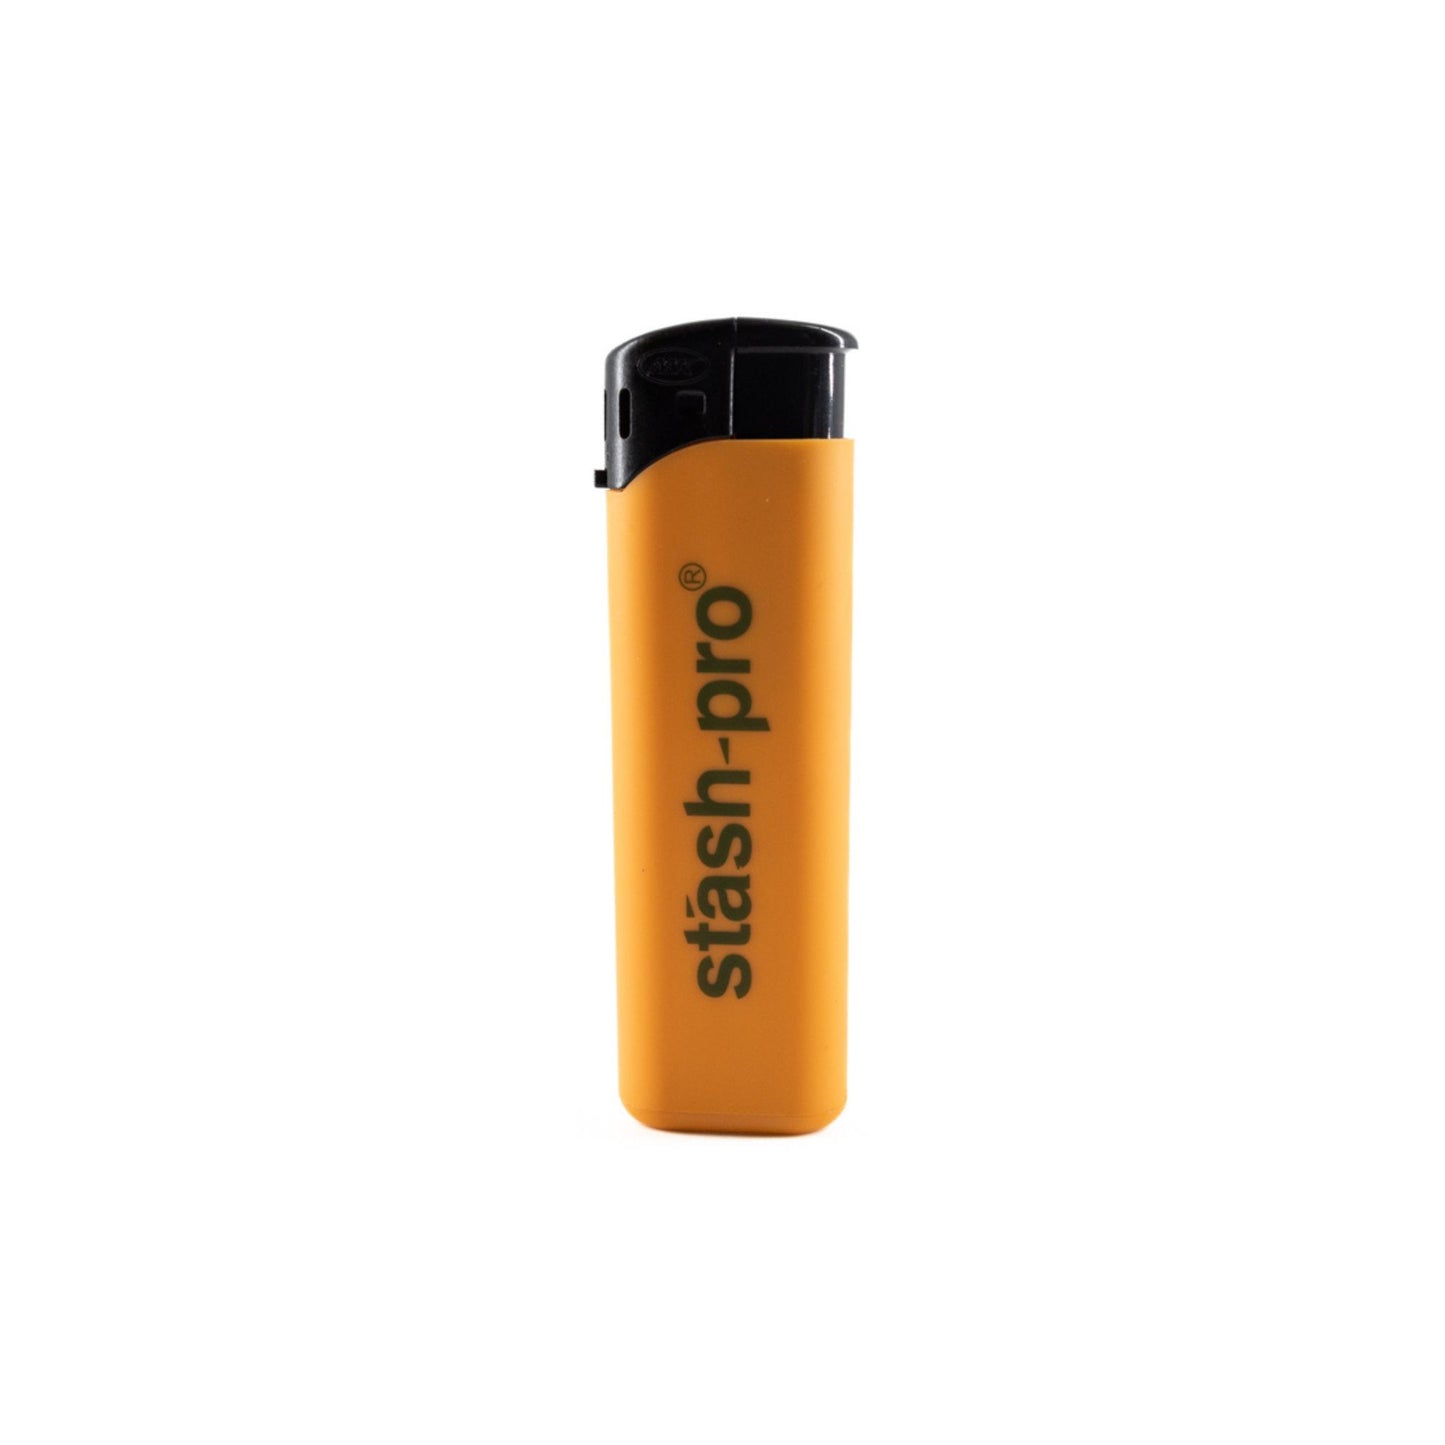 Stash-Pro Pocket Lighter ZY218DKS1 Orange